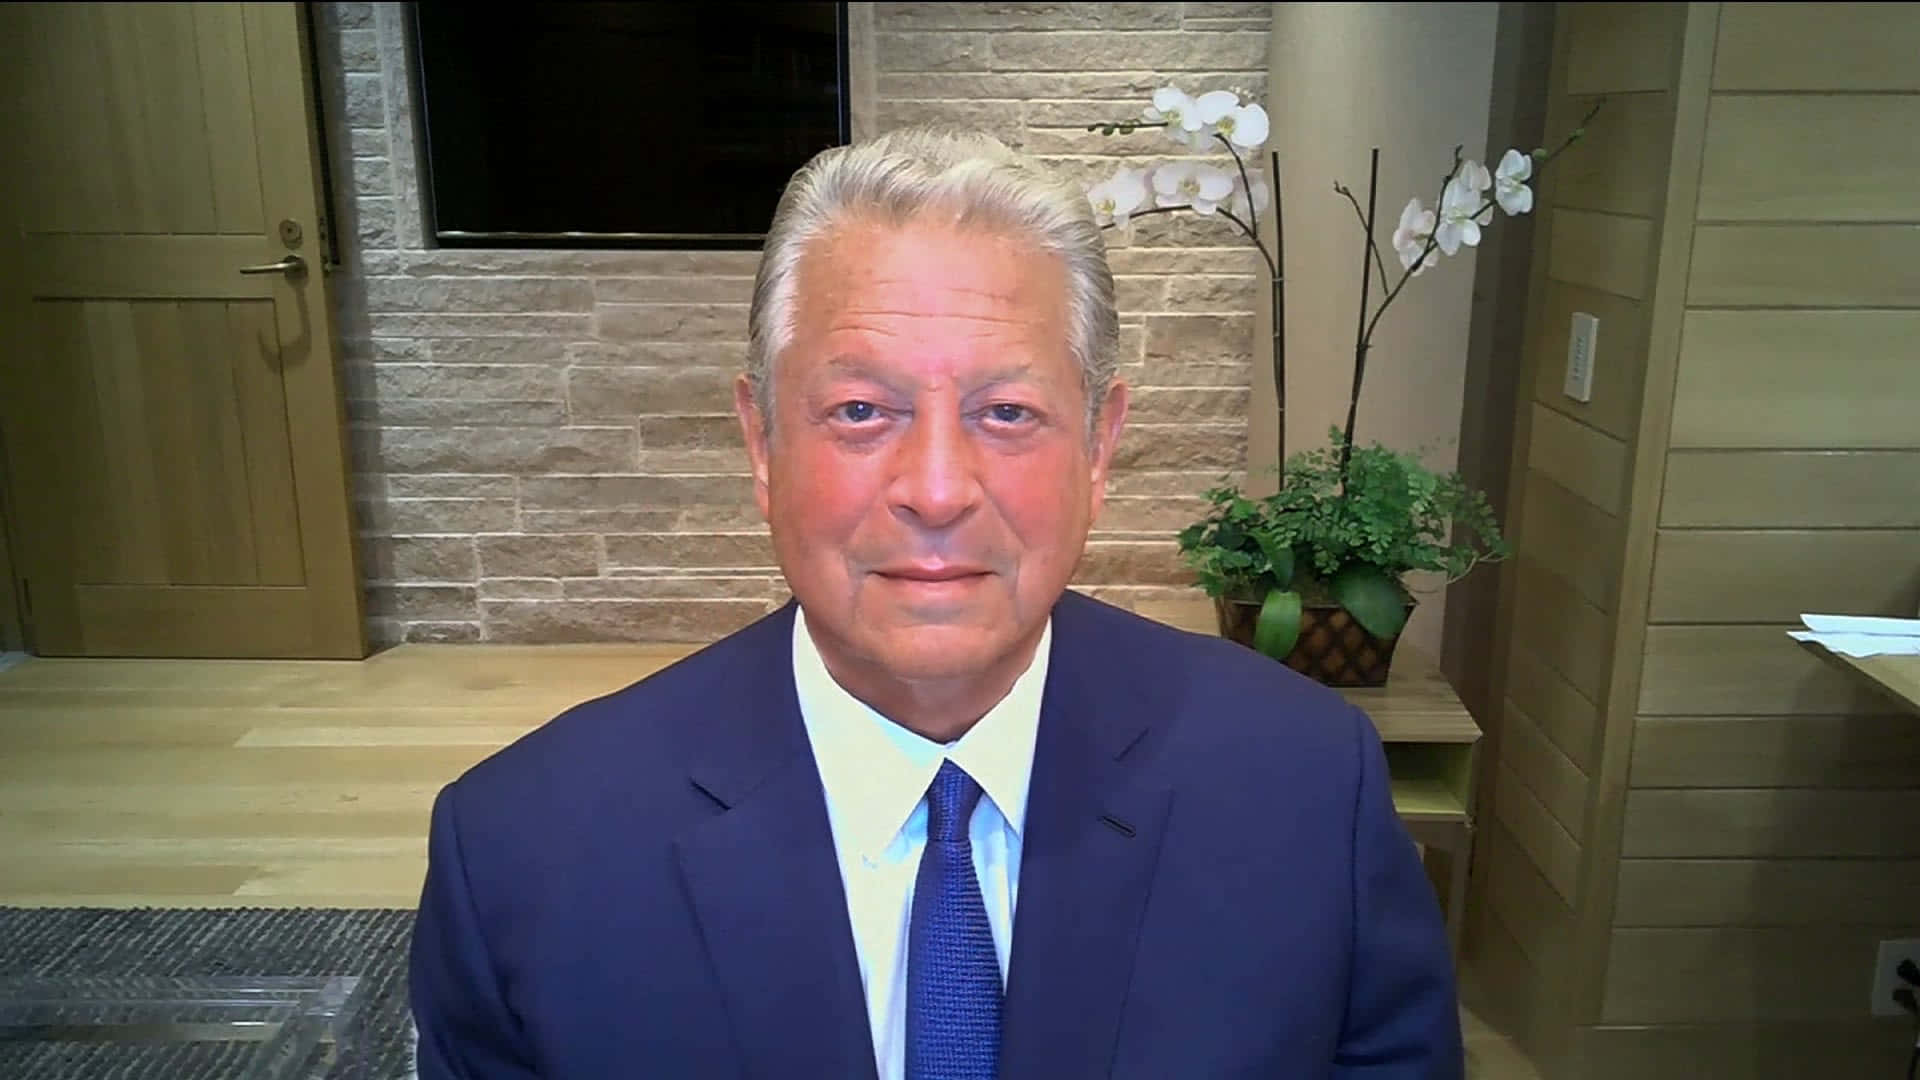 A Candid Headshot of Al Gore Wallpaper